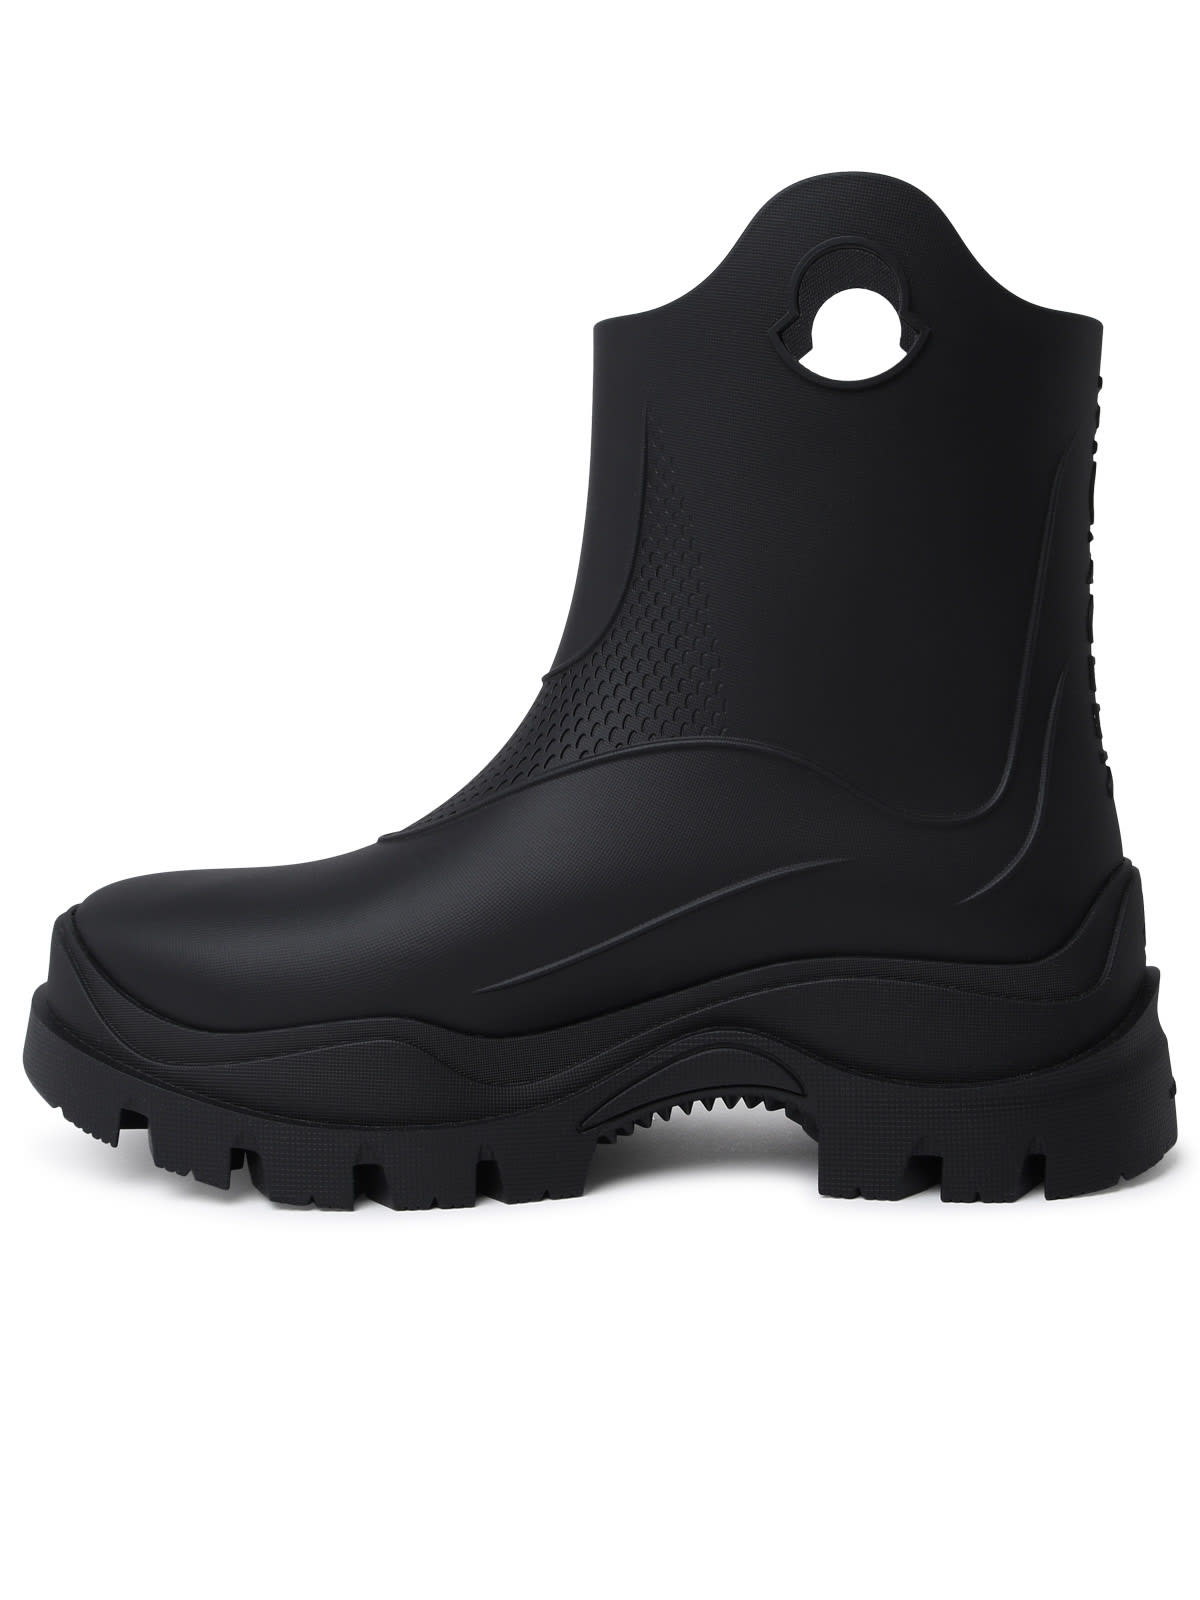 Shop Moncler Misty Black Pvc Rain Boots